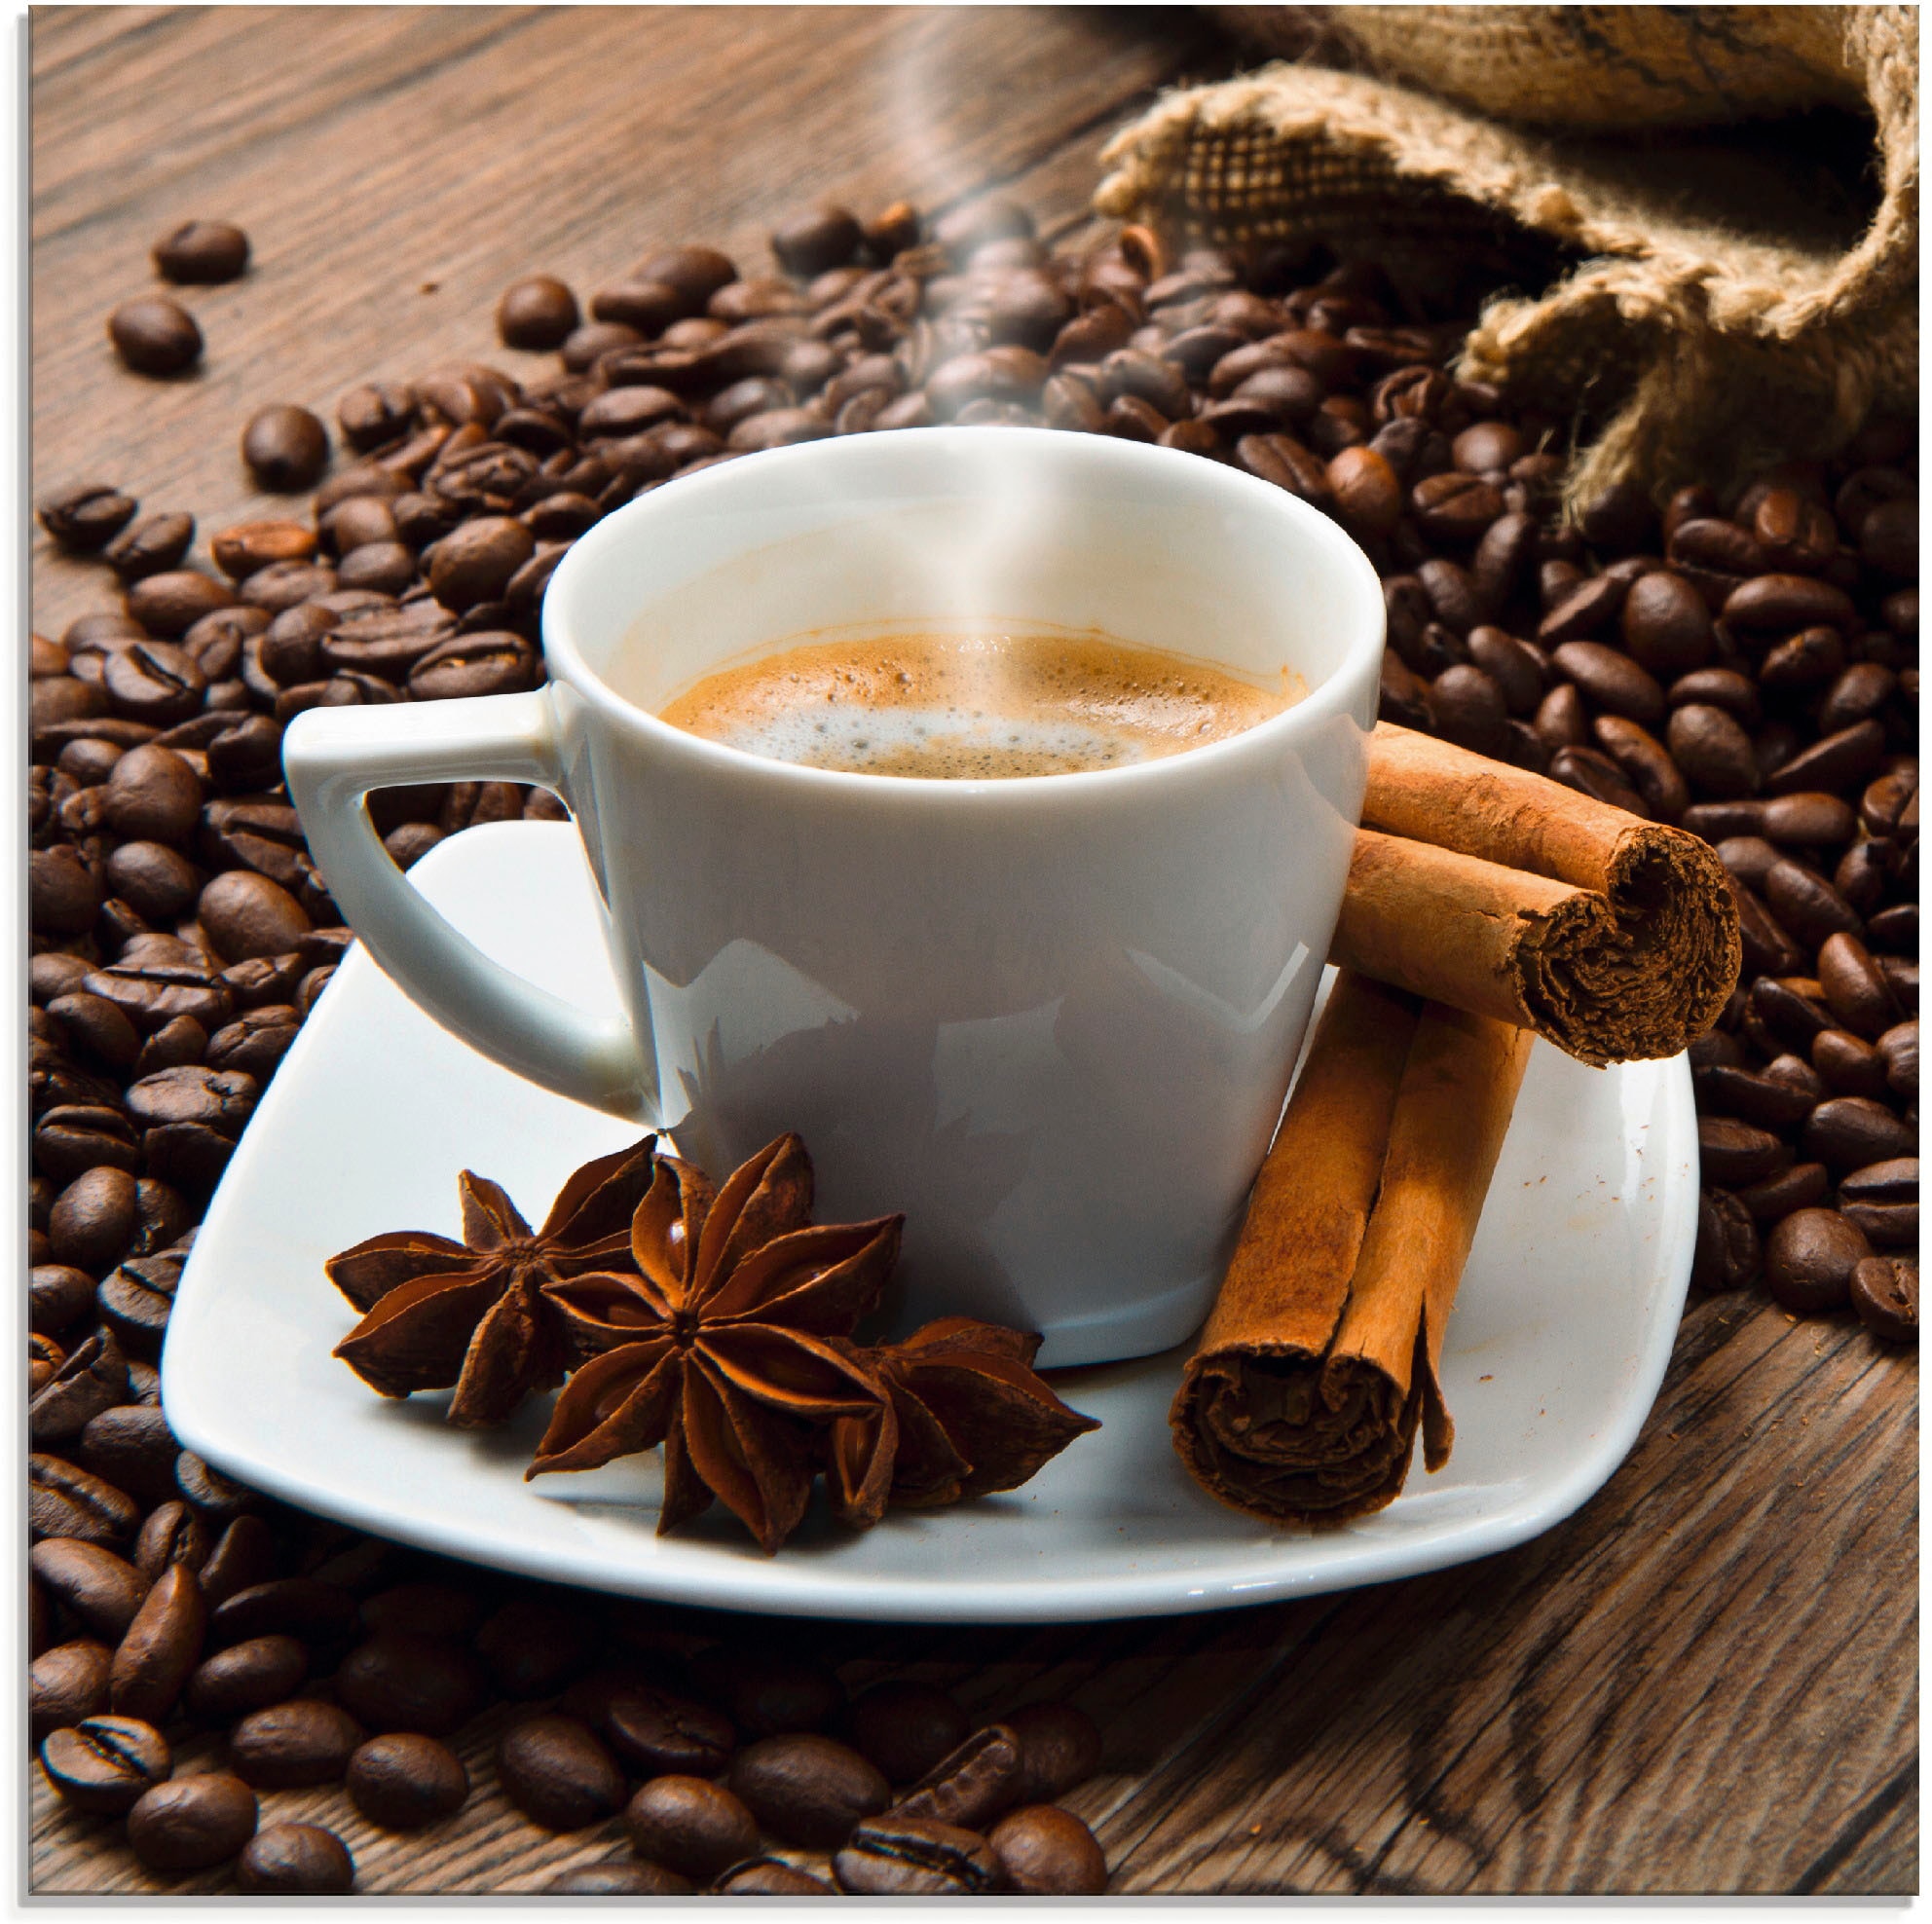 Artland Glasbild »Kaffeetasse Leinensack mit Kaffeebohnen«, Getränke, (1 St.), in verschiedenen Grössen